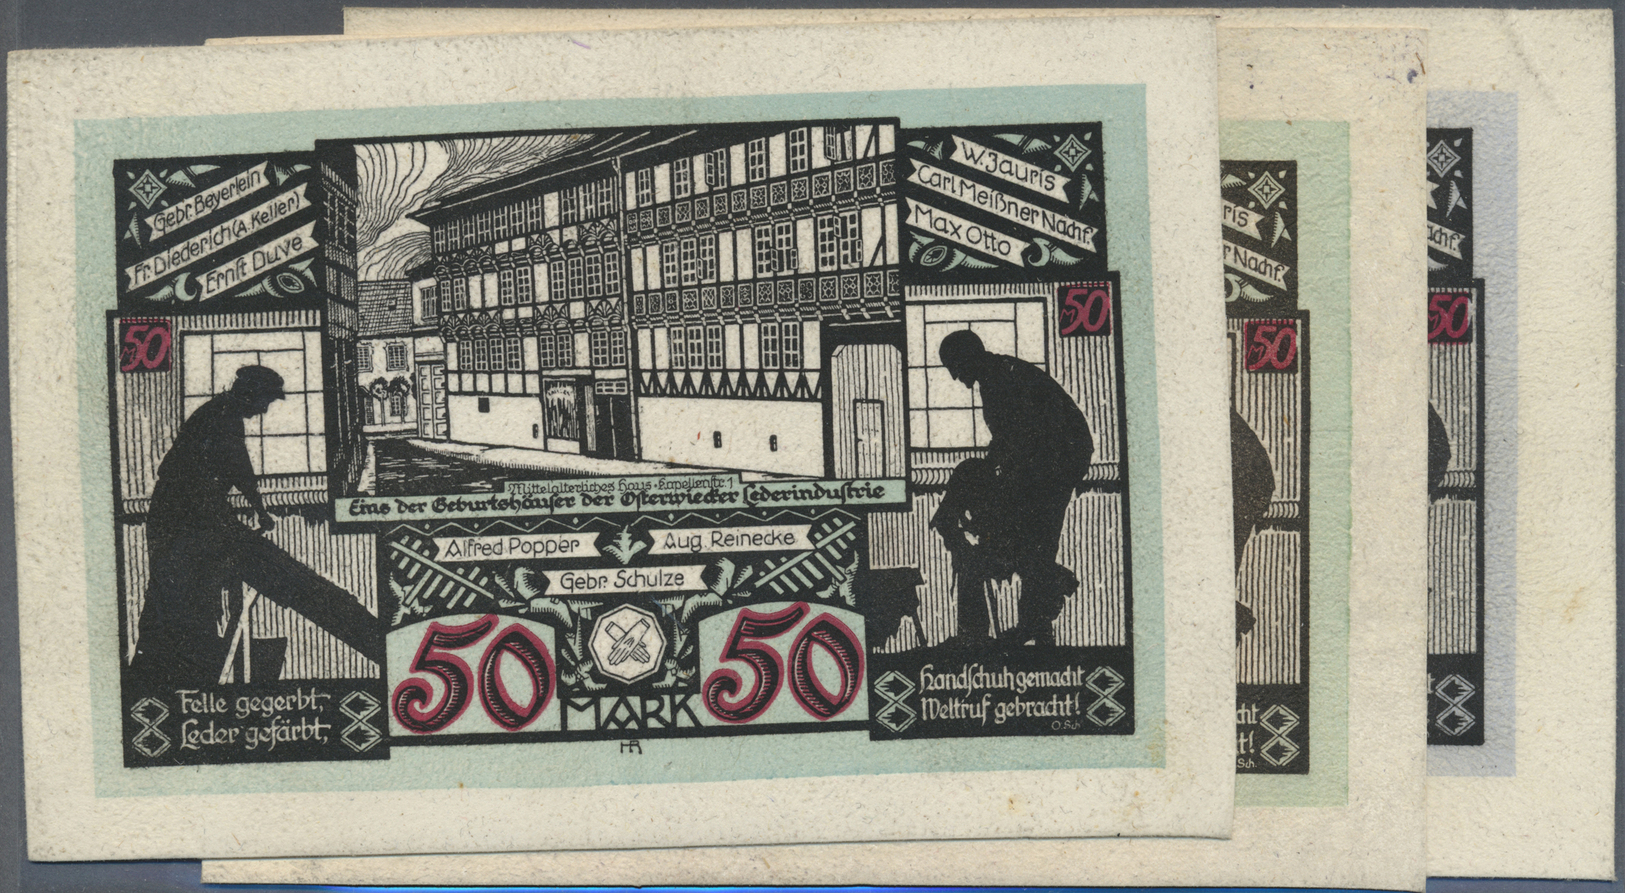 04101 Deutschland - Notgeld besonderer Art: Osterwieck, Stadt, 2 x 20 Mark, 3 x 50 Mark, 2 x 100 Mark, alle 1.5.1922, 50